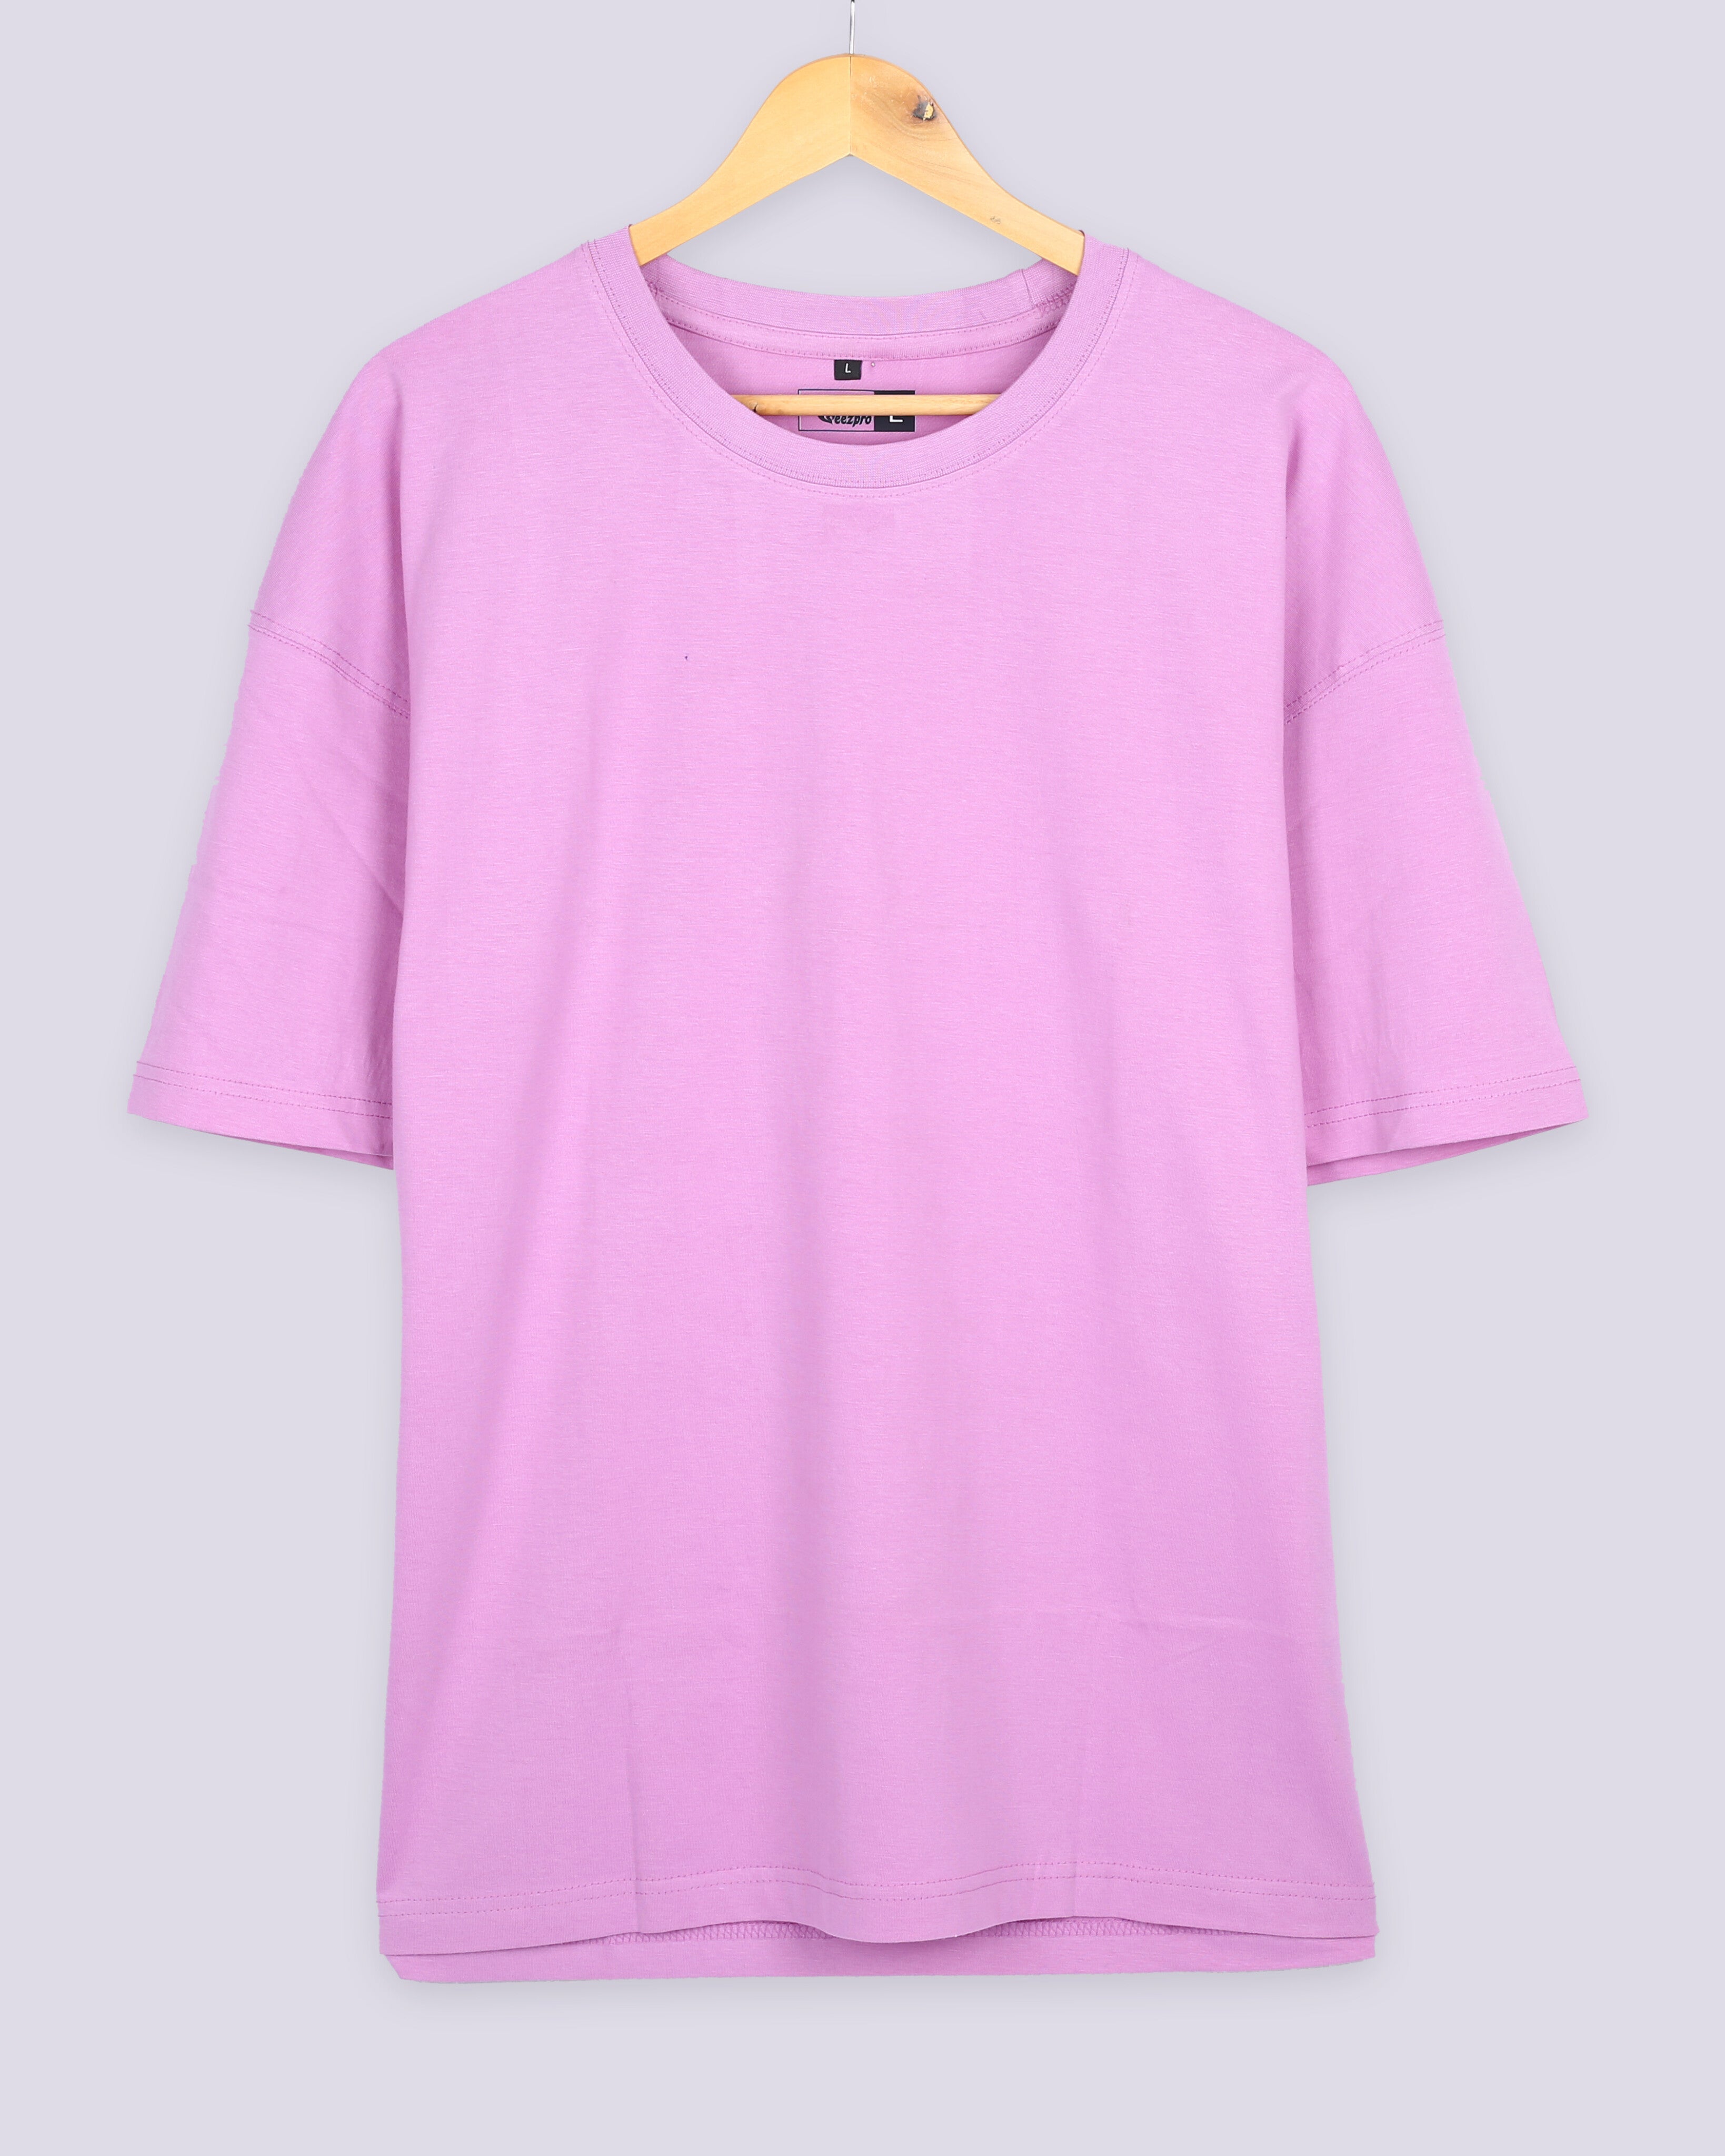 Plus Sized T Shirts – Pitshirts